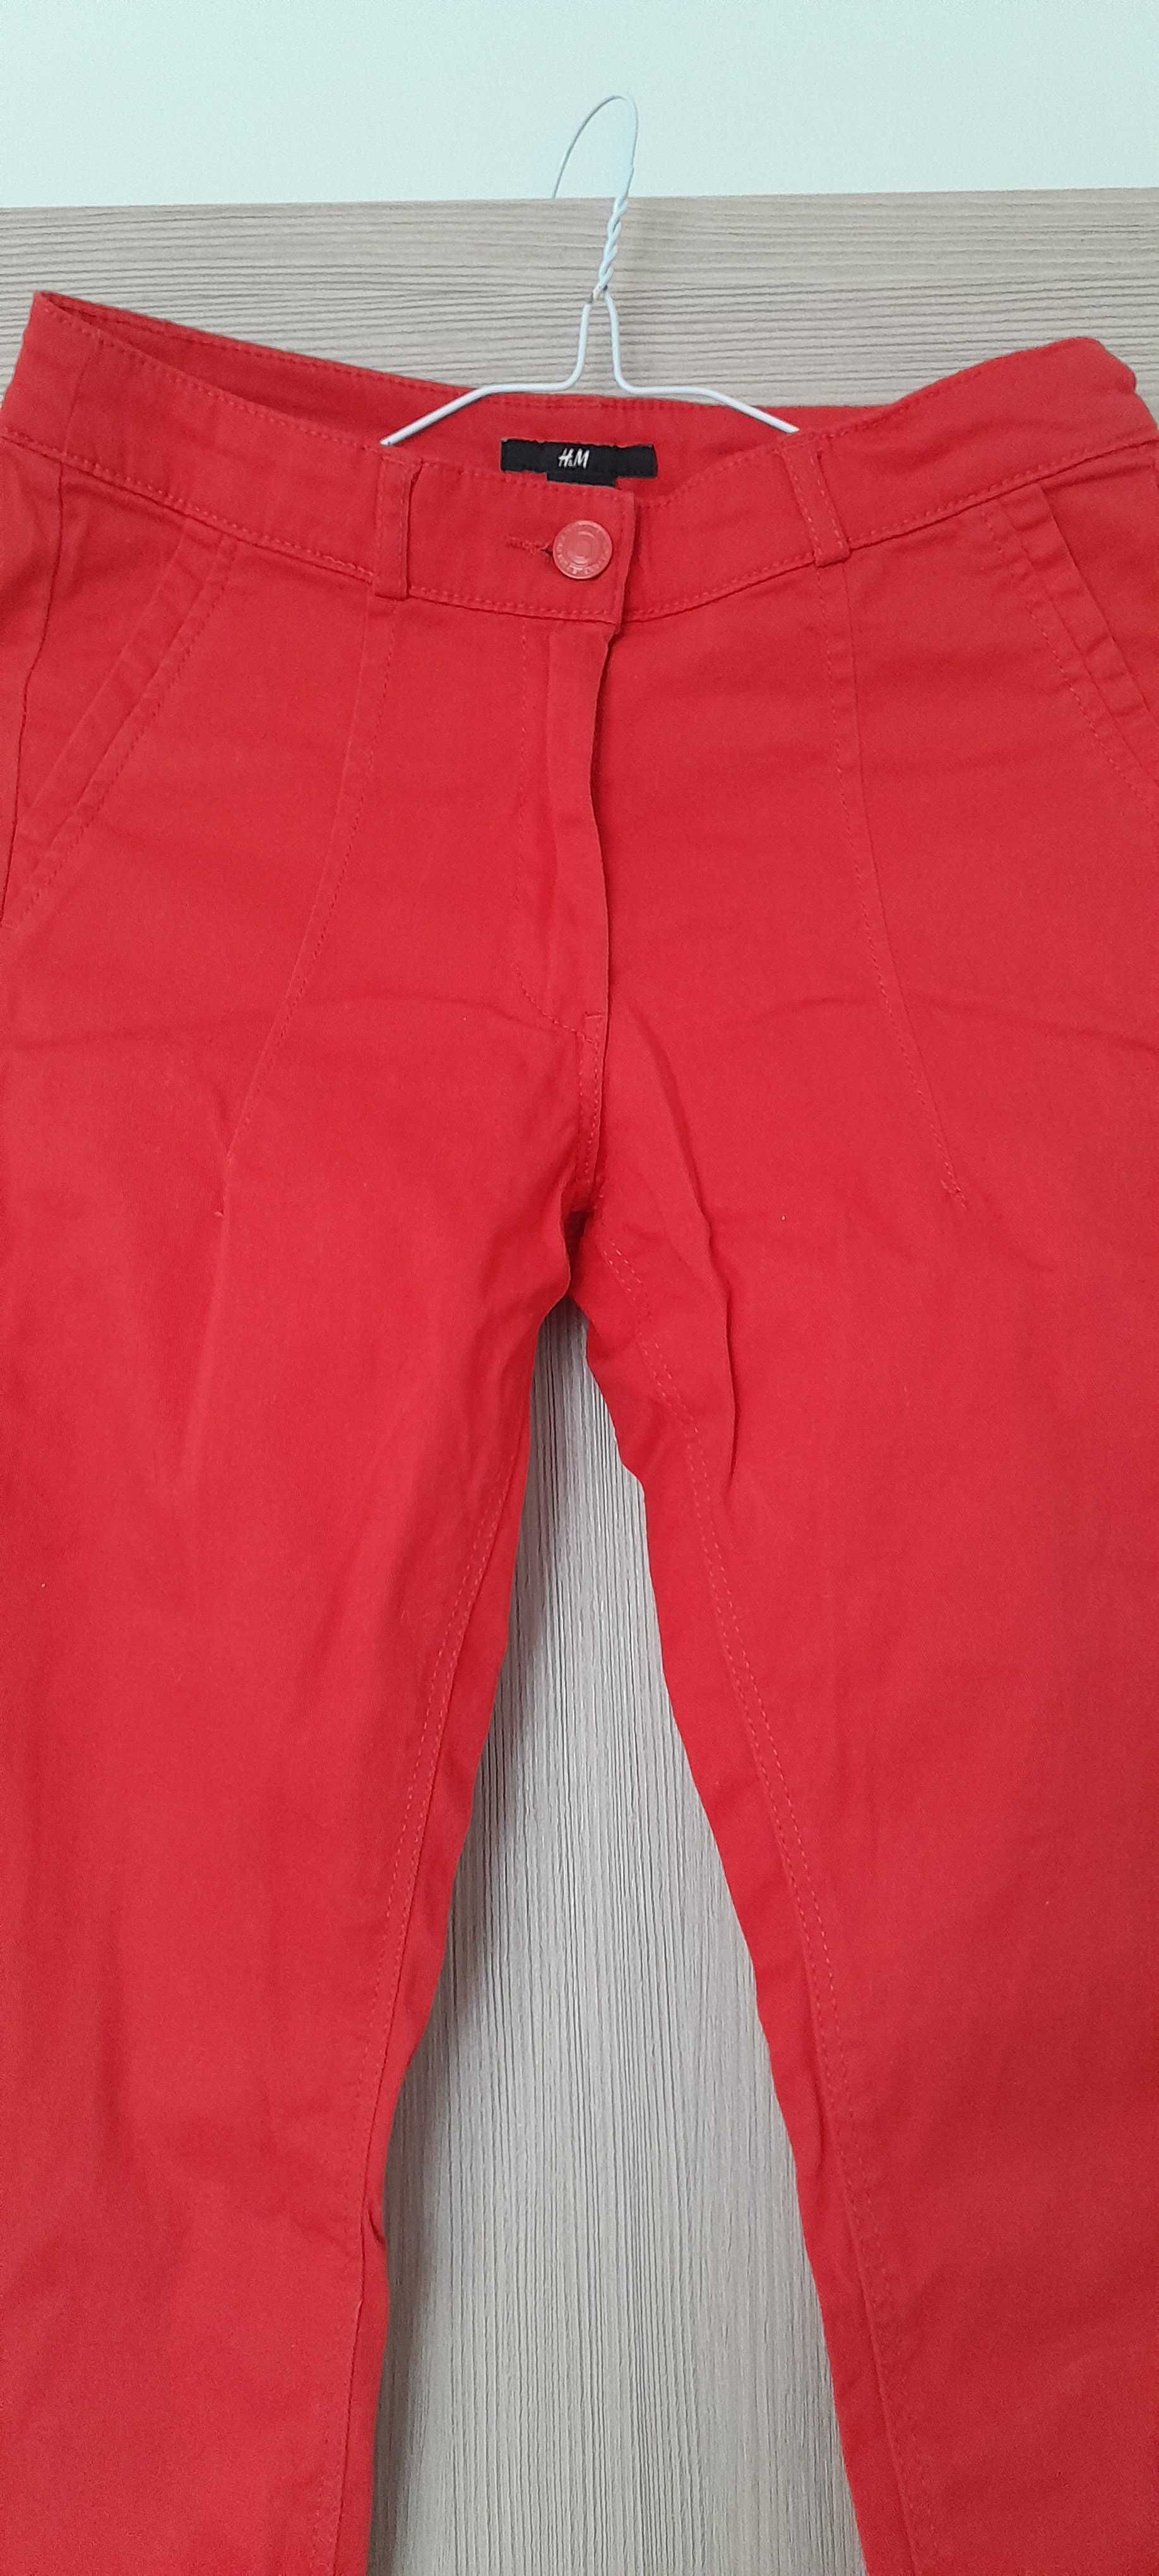 Spodnie czerwone rurki h&m 34